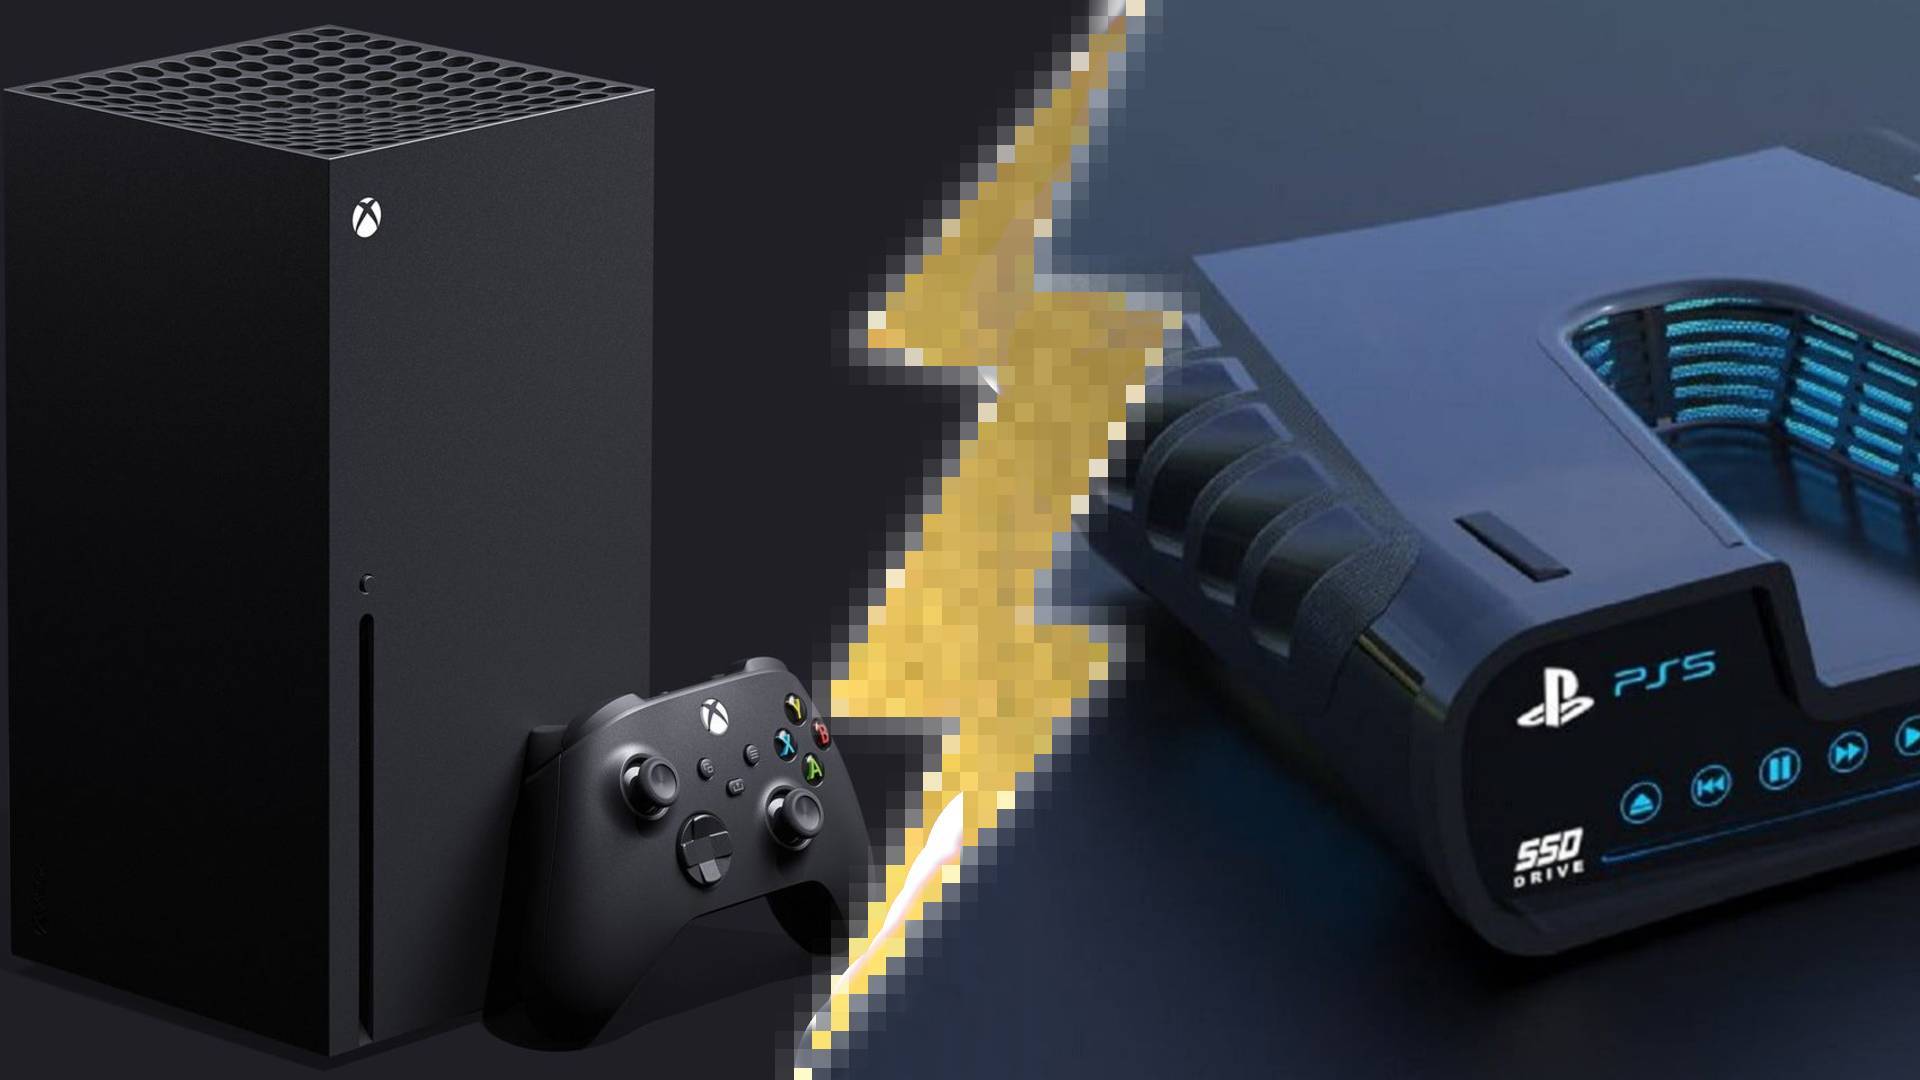 Halo 4 Xbox Series X vs Xbox 360 Comparison 